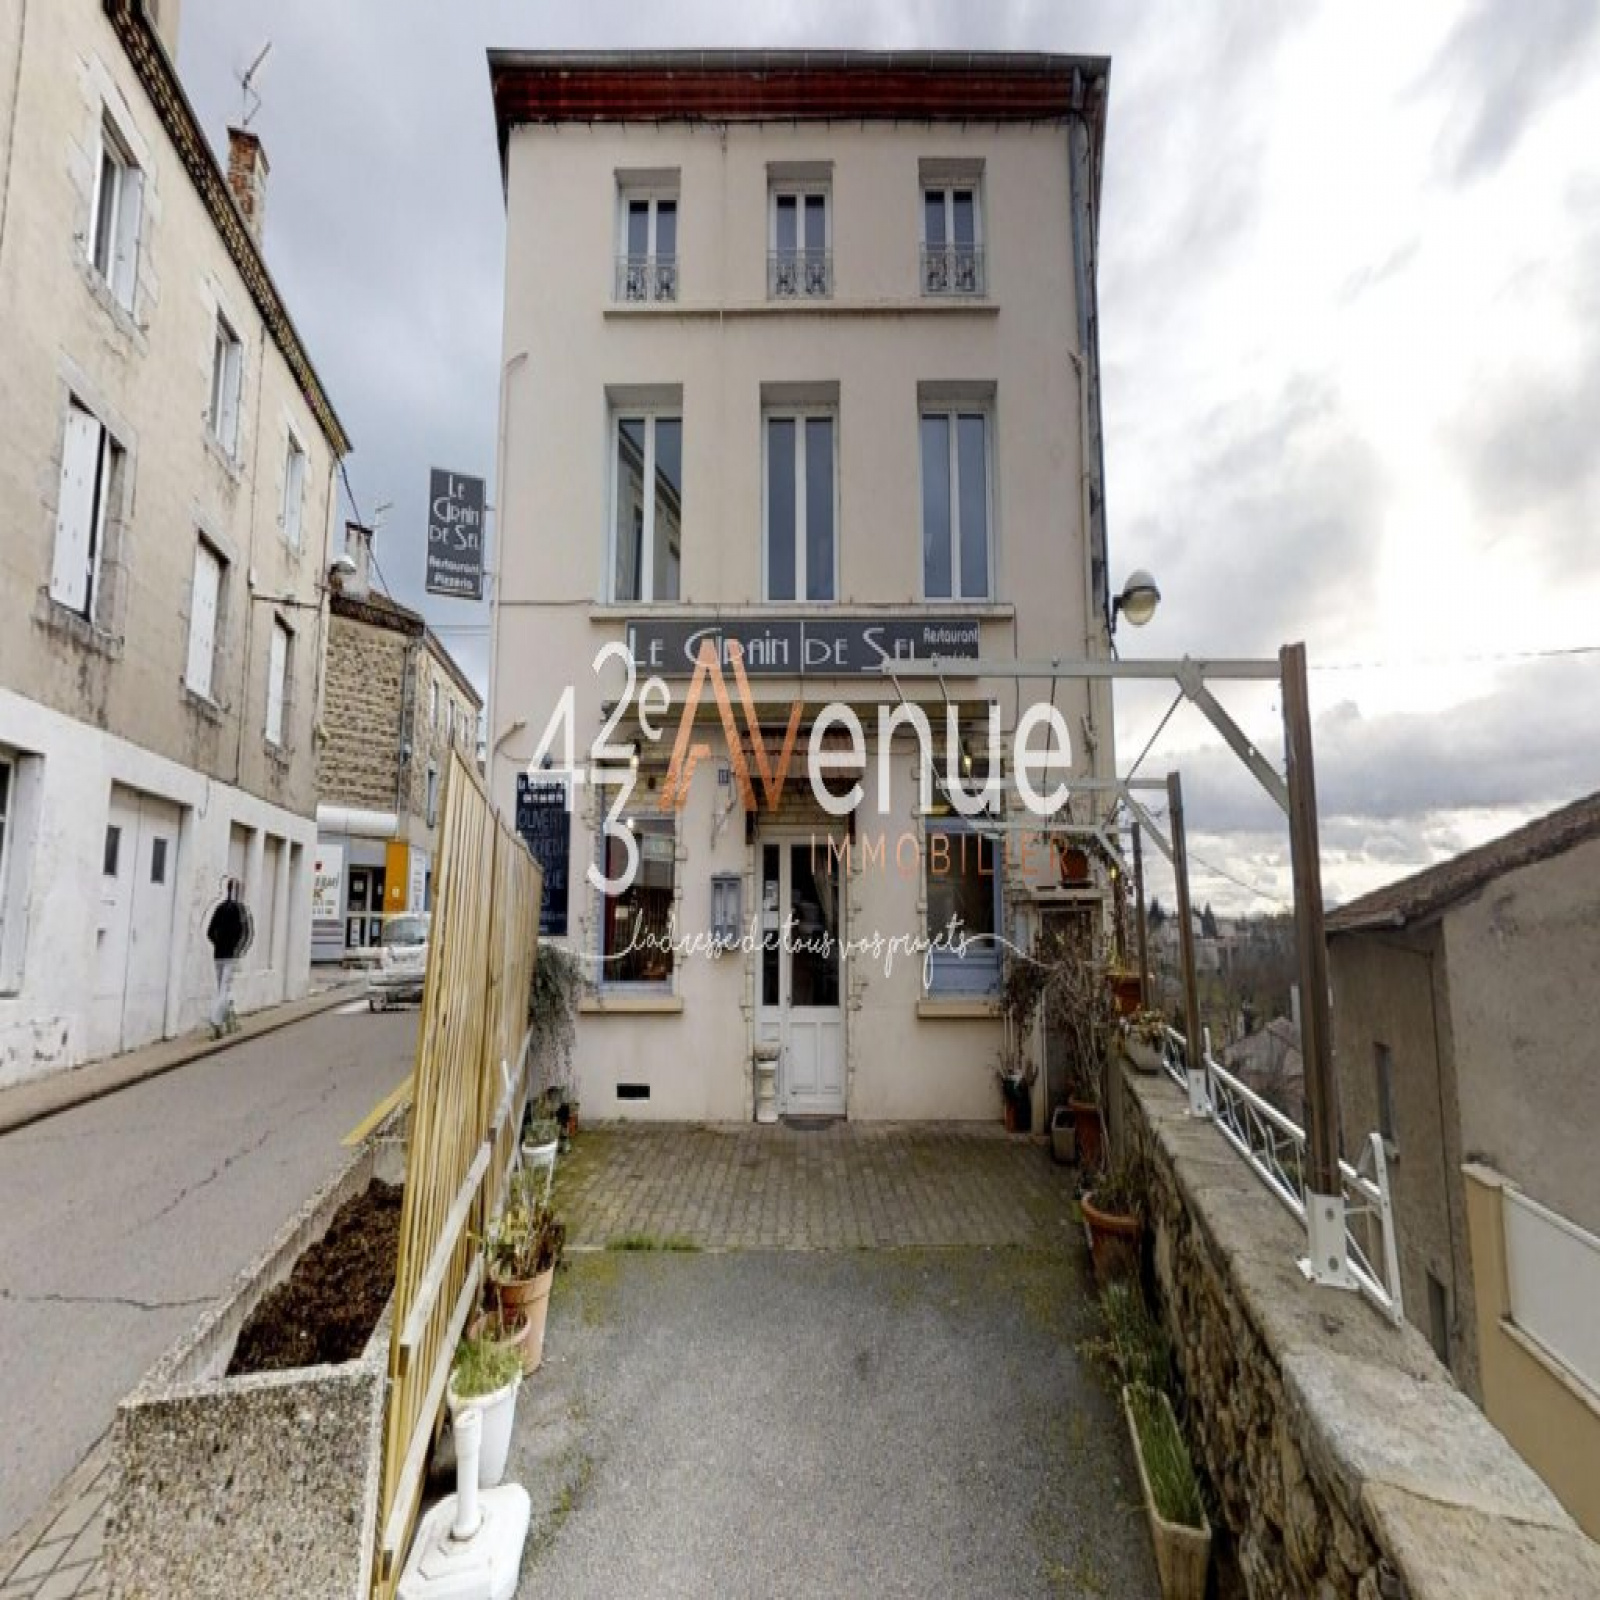 Vente Immeuble 180m² 8 Pièces à Monistrol-sur-Loire (43120) - 43ème Avenue Immobilier